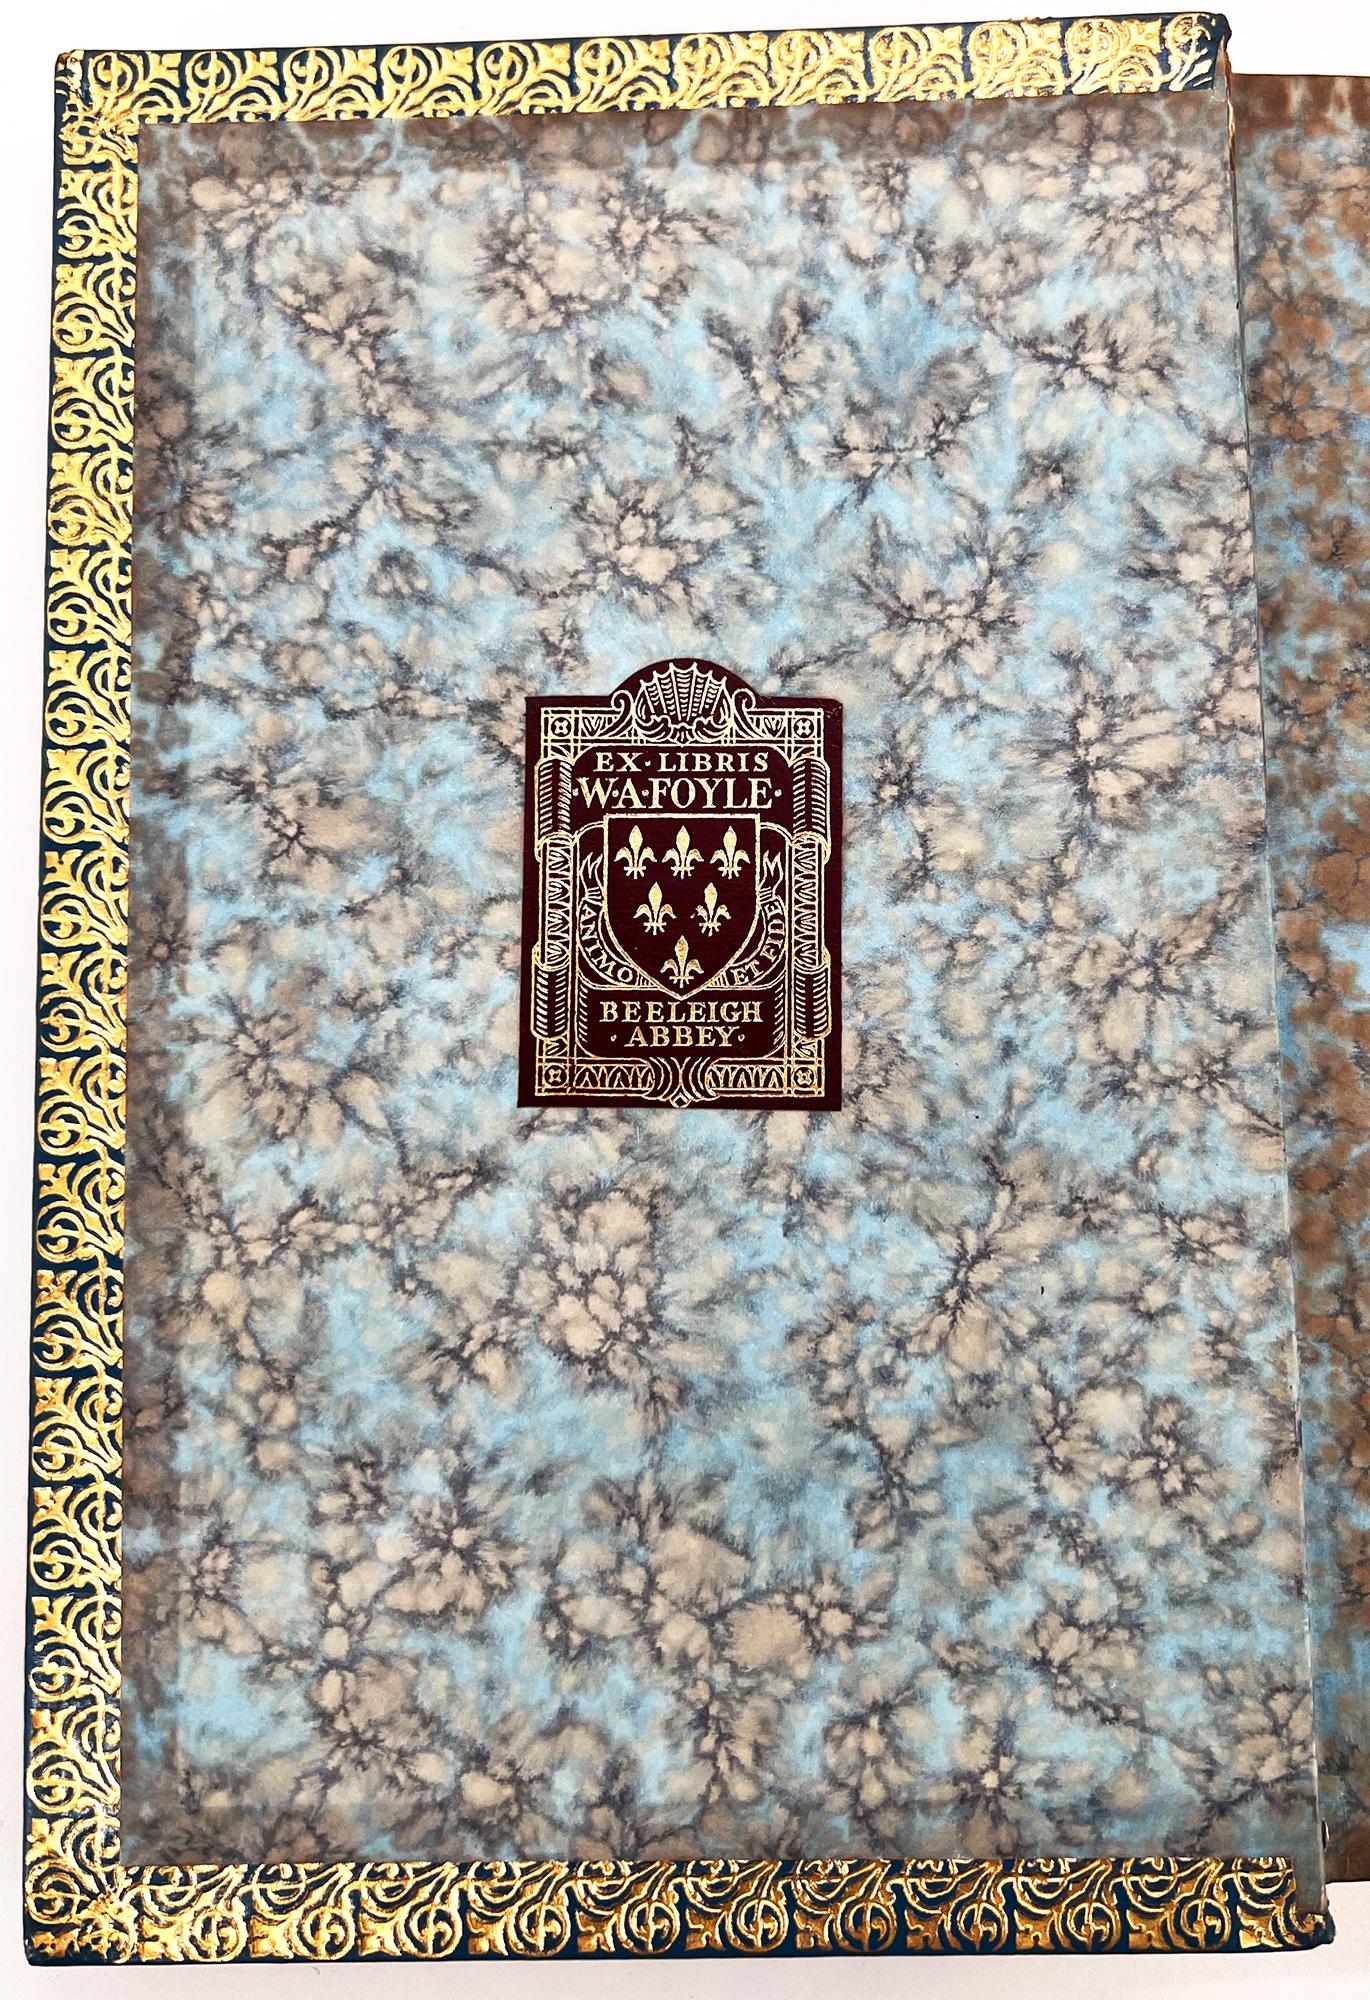 ERSTE ENGLISCHE AUSGABE / ERSTAUSGABE
London: Longmans, Green and Co. 1887. 
8vo. 7 1/4 x 4 3/4 (184 x 120 mm); viii, 31, ii Anzeigen; zwei einander gegenüberliegende Farblithographien auf einer einzigen Faltung aus schwerem Papier gehen dem Titel